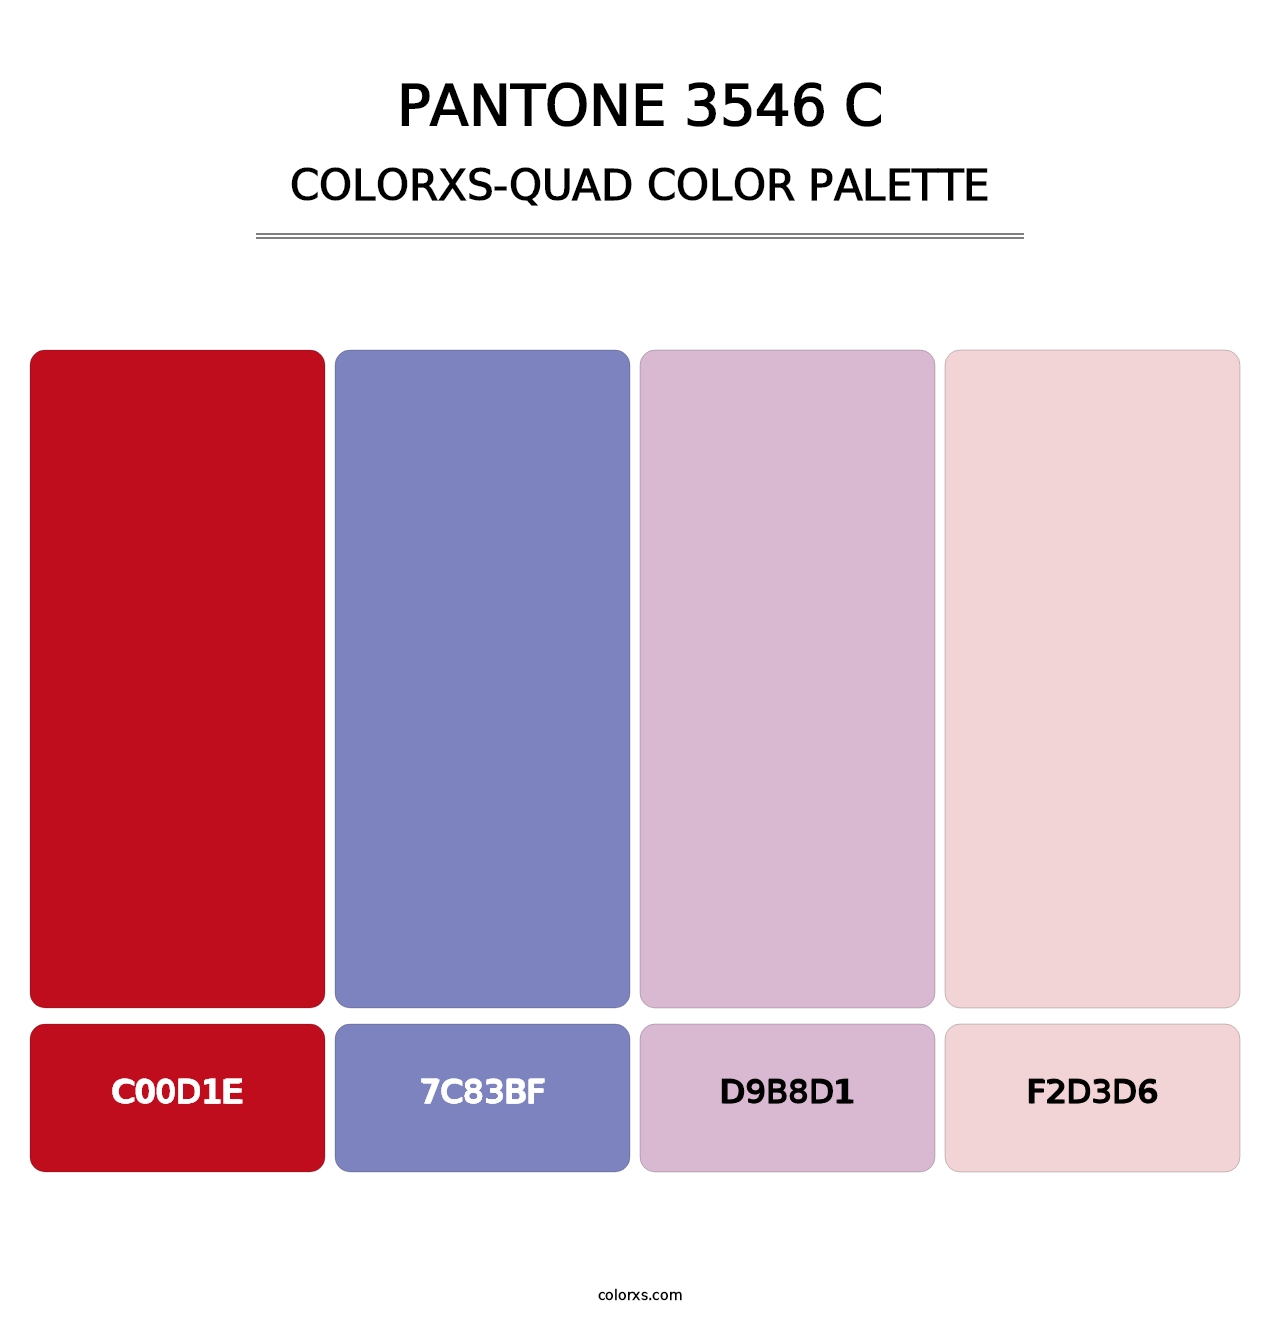 PANTONE 3546 C - Colorxs Quad Palette